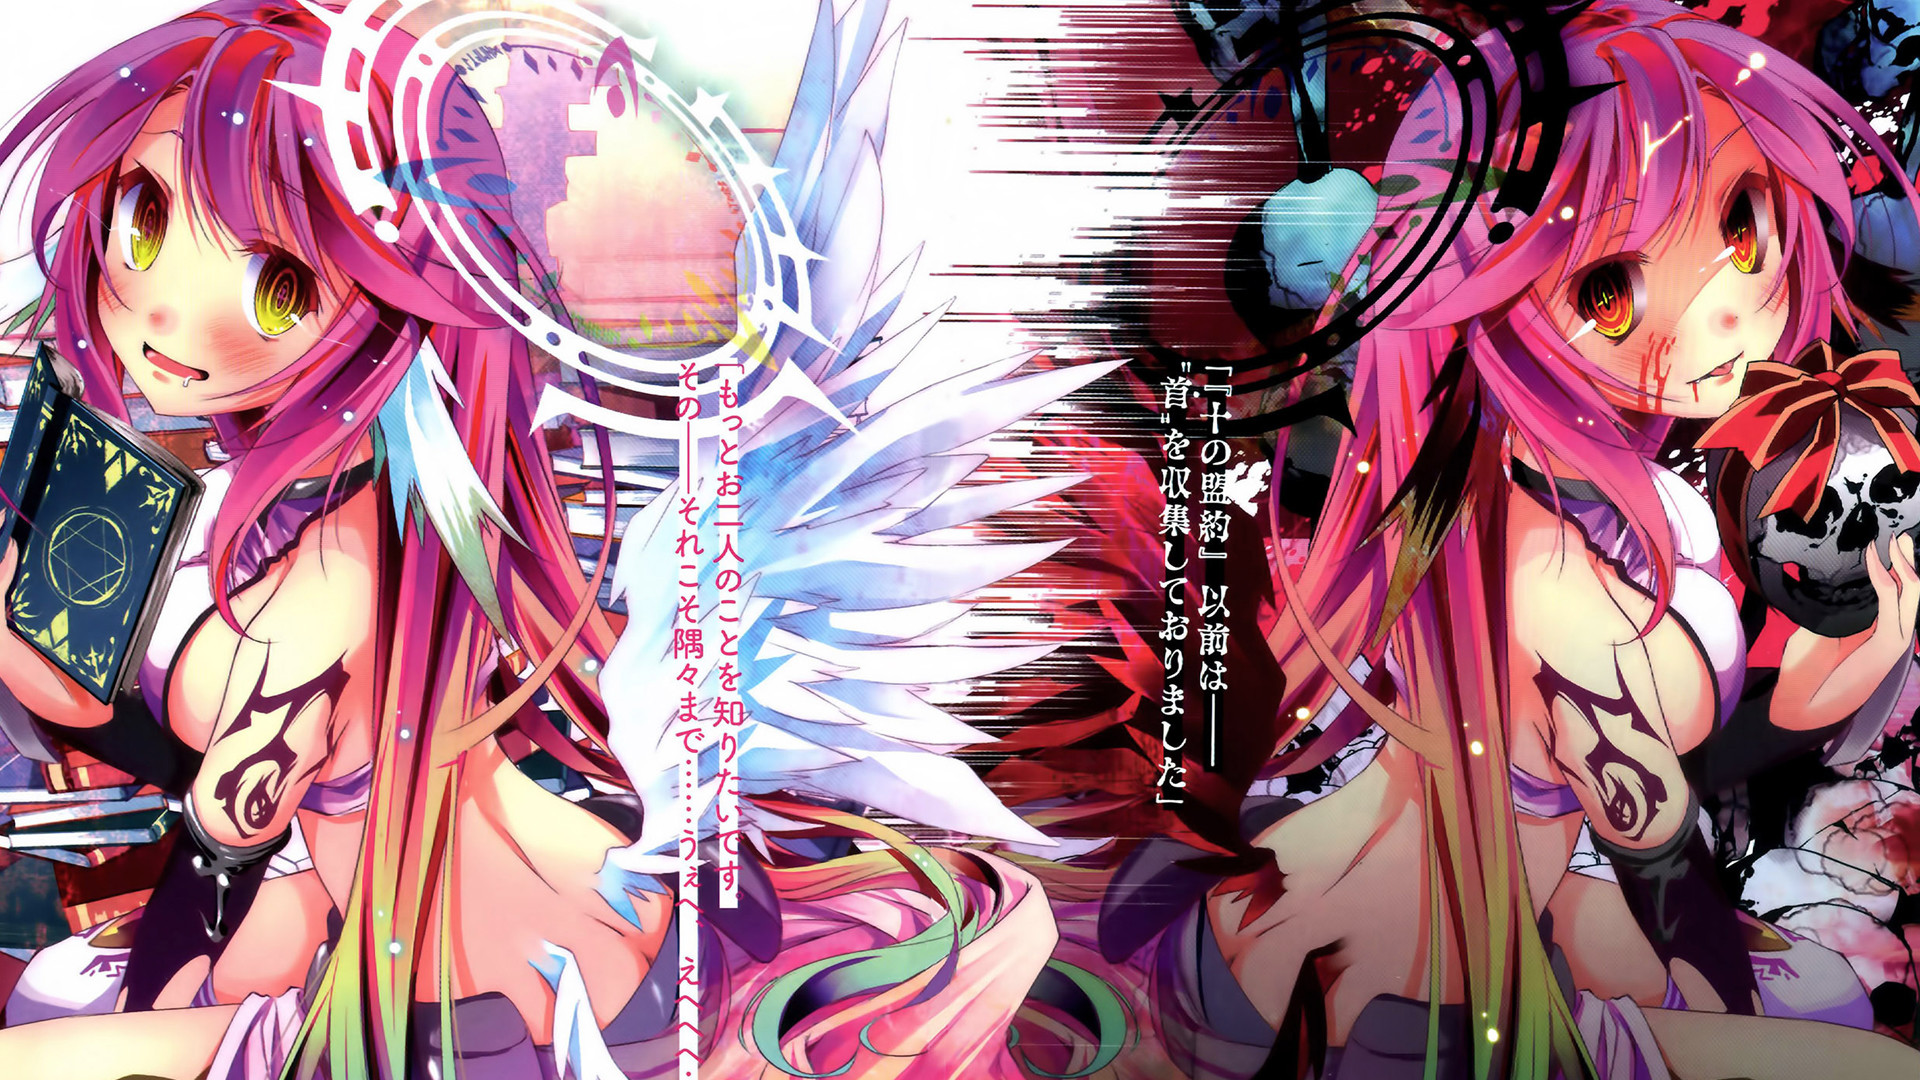 1920x1080 Jibril Anime Girl HD Wallpaper. Anime & Manga + Girls + No Game No Life